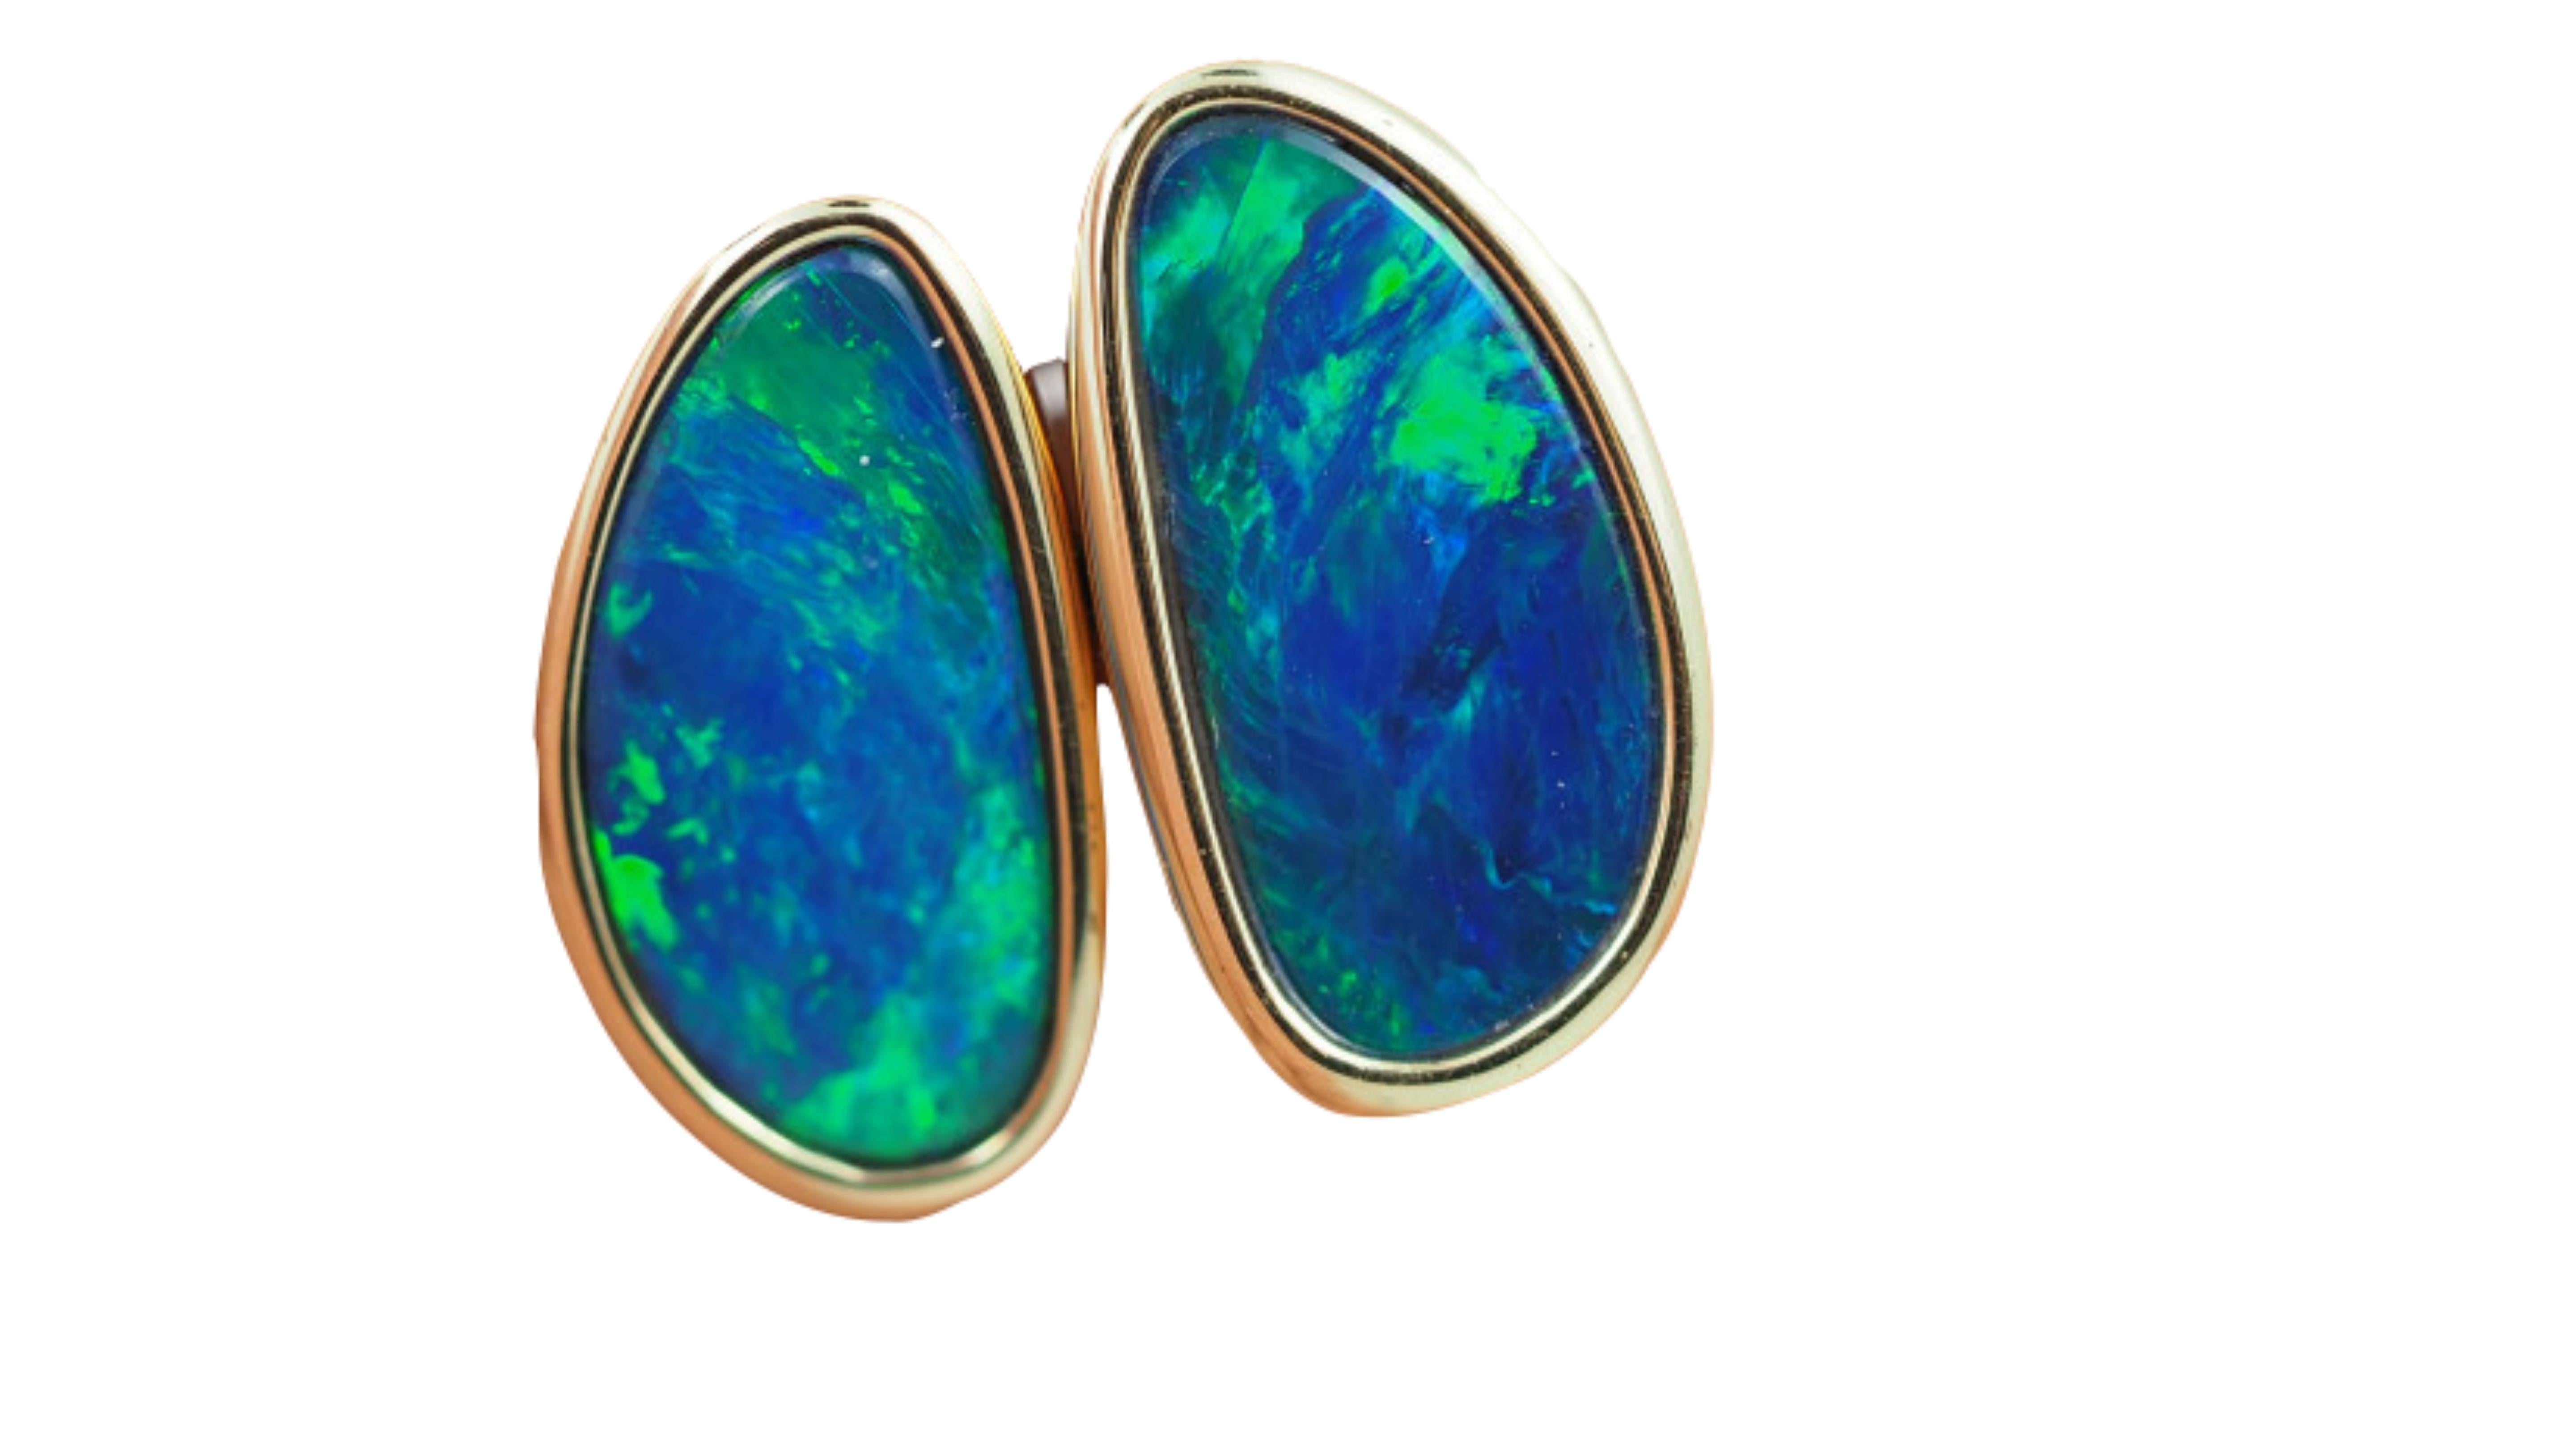 Contemporary Australian Opal Earrings 14 Karat Yellow Gold For Sale